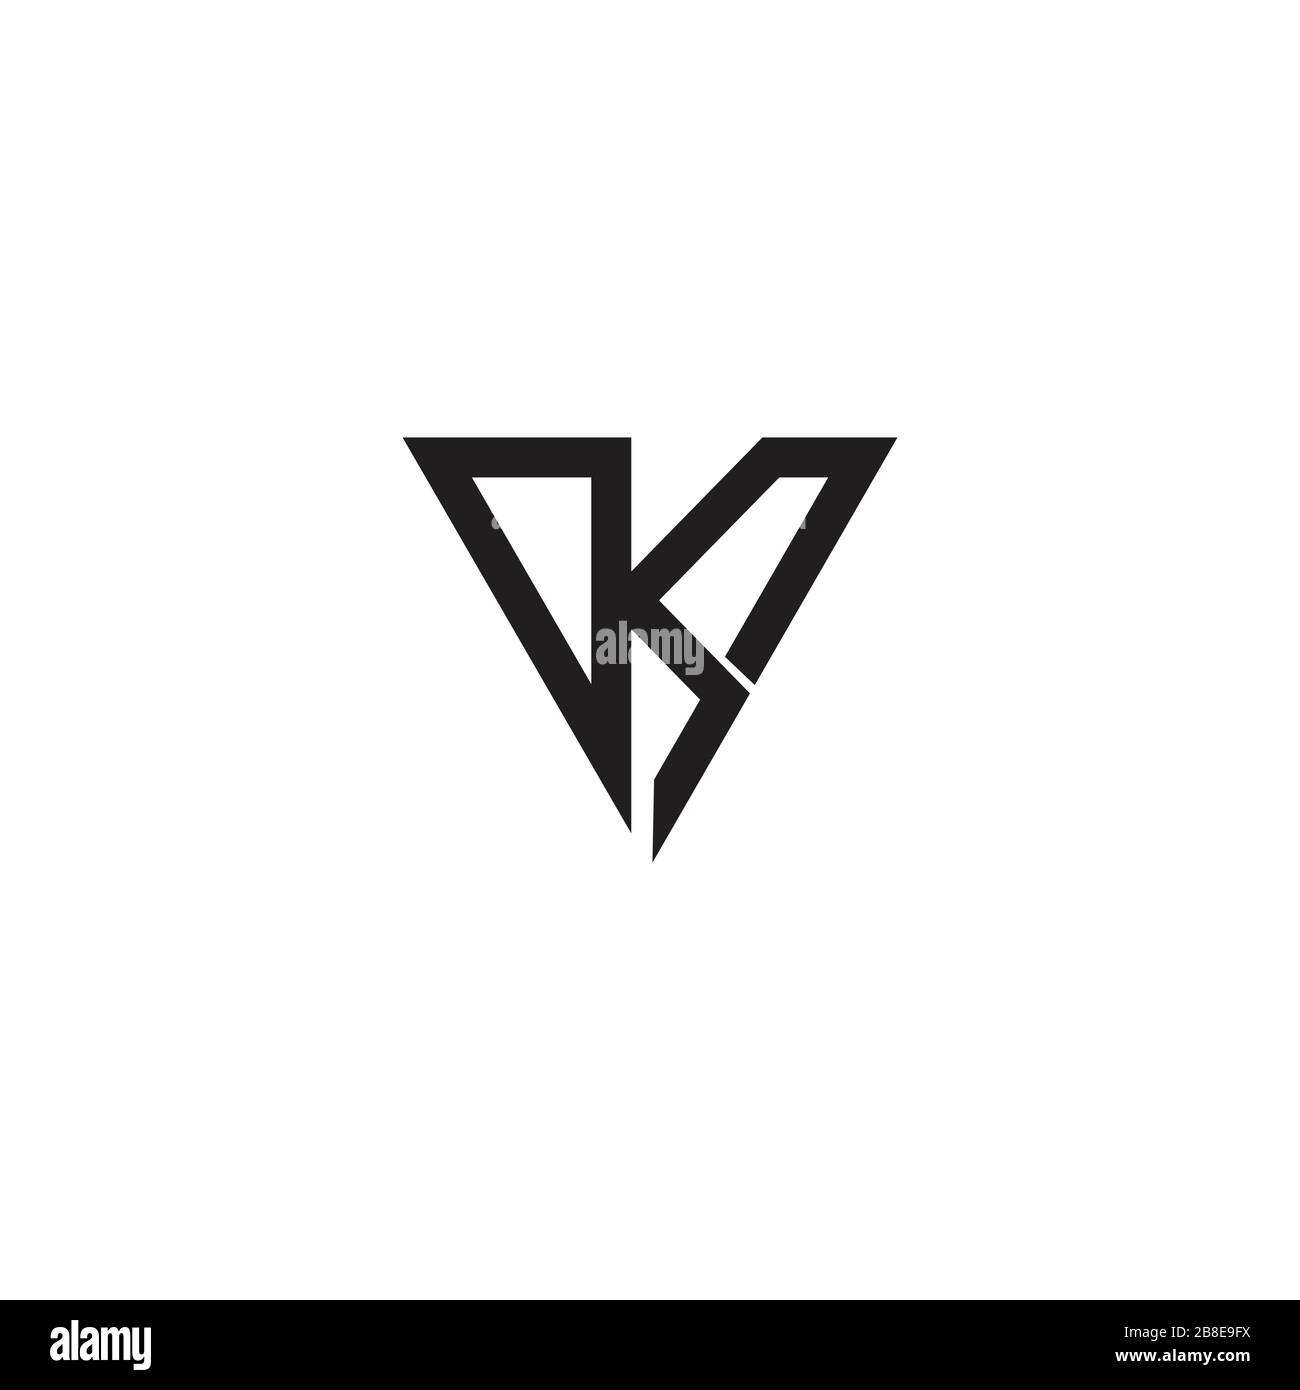 Initial letter k logo design template Stock Vector